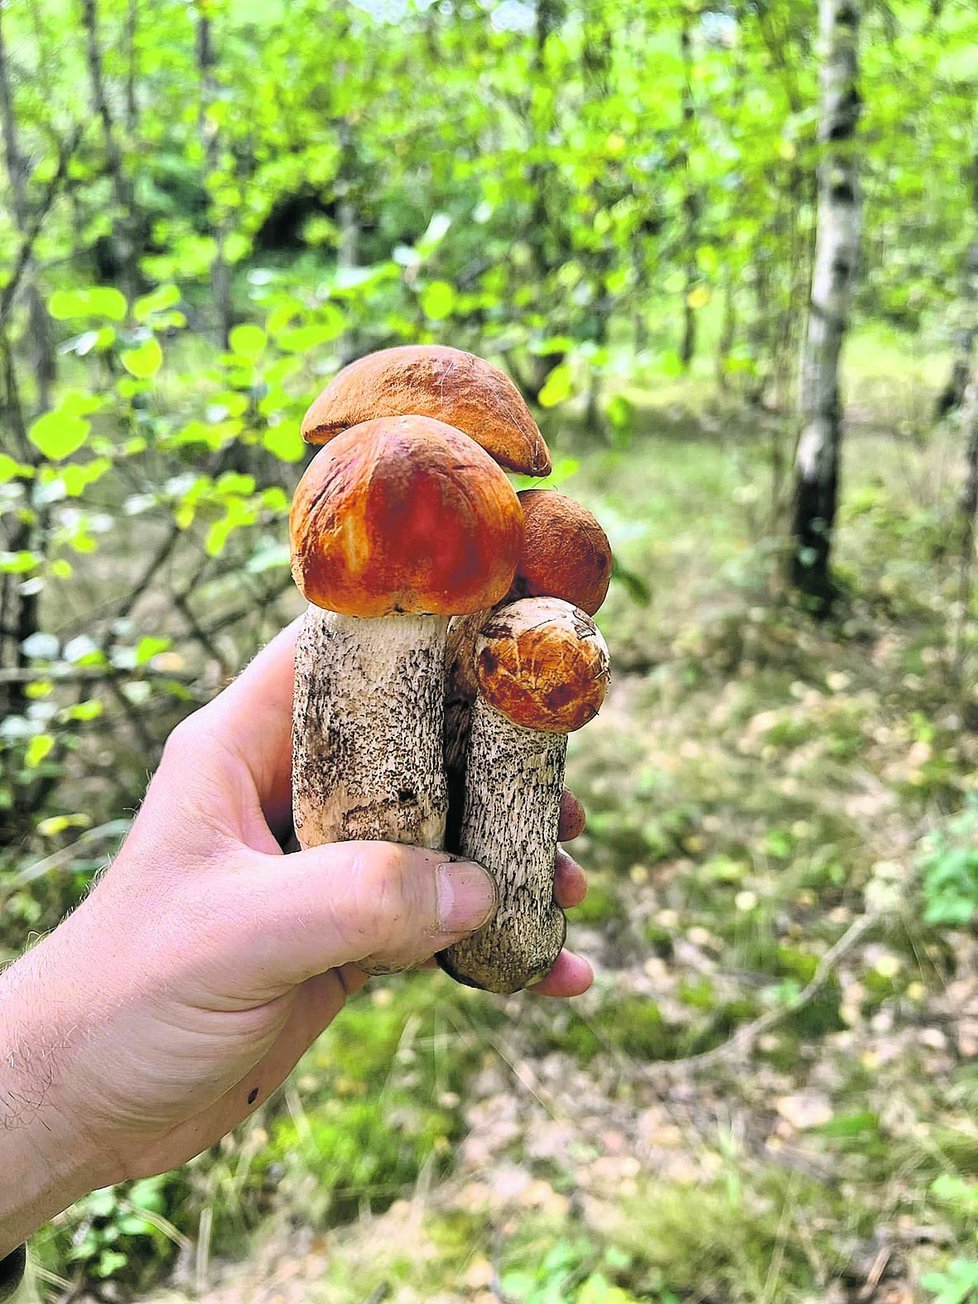 Po vydatných deštích nejspíš porostou houby